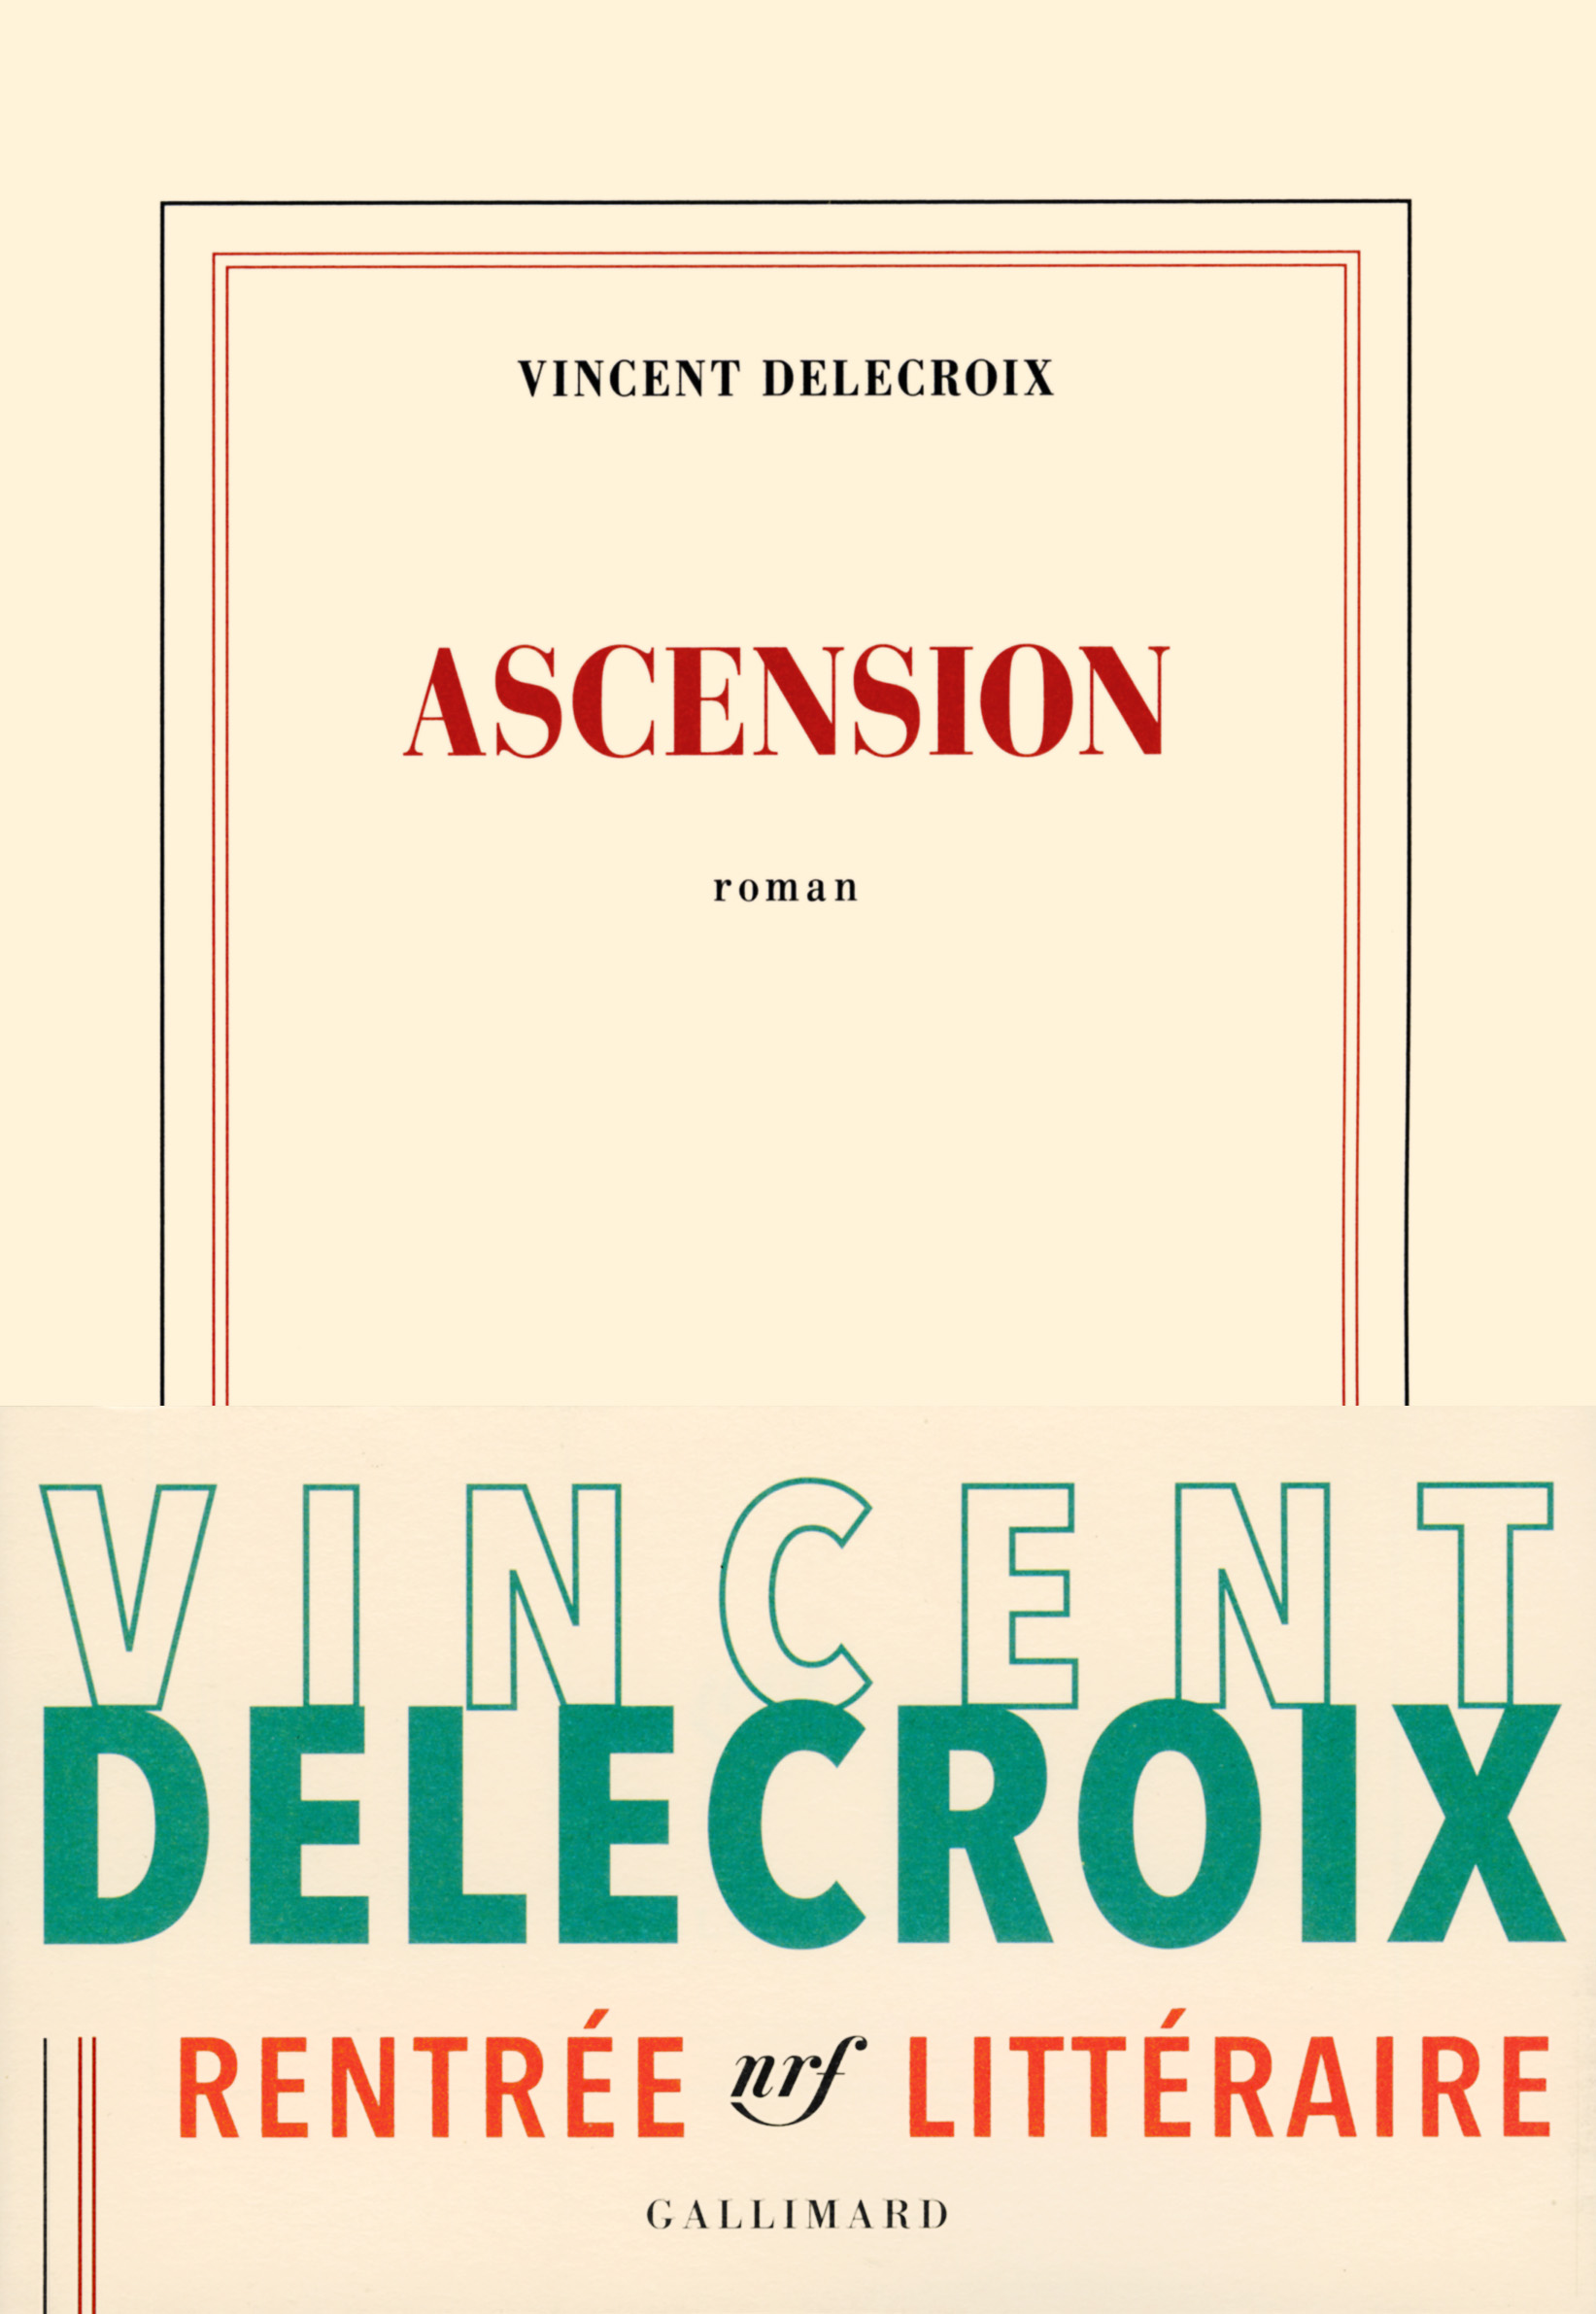 Ascension de Vincent Delecroix, paru chez Gallimard